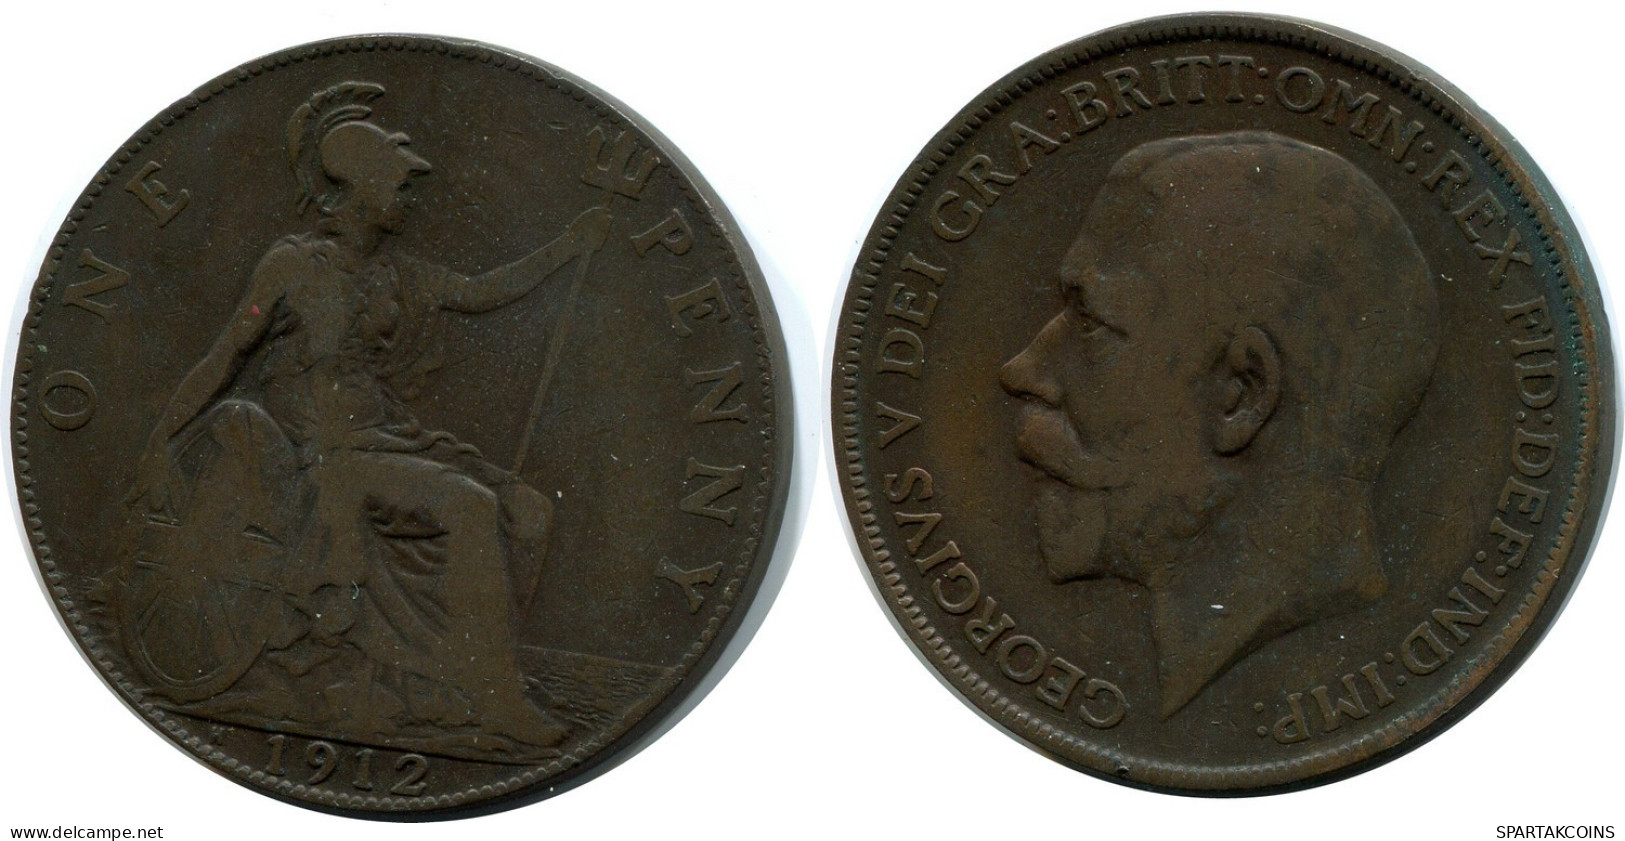 PENNY 1912 UK GROßBRITANNIEN GREAT BRITAIN Münze #AZ814.D.A - D. 1 Penny